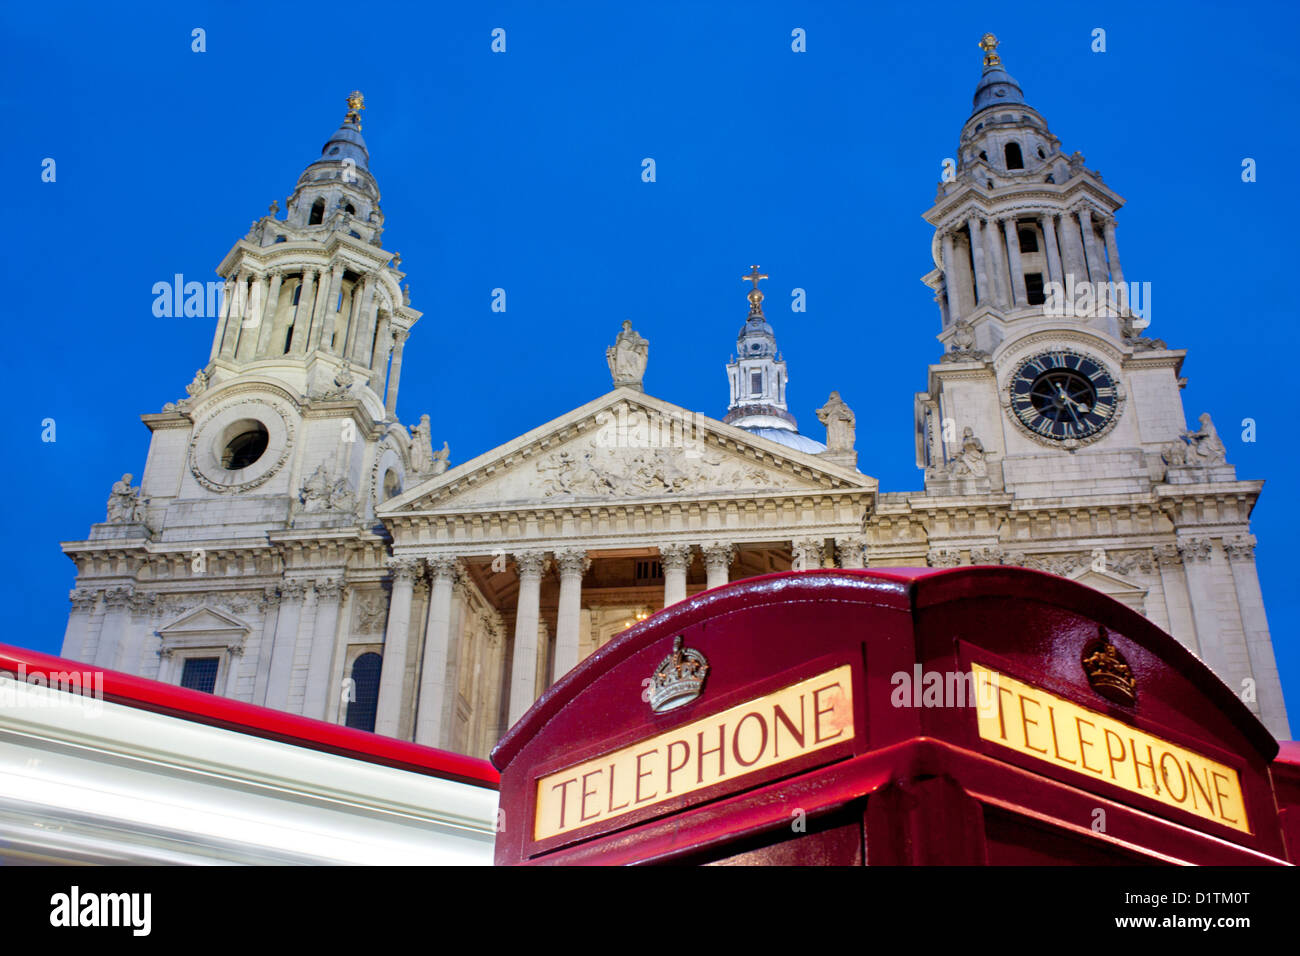 St Paul's à Cathedrat nuit / crépuscule / Crépuscule avec téléphone rouge traditionnel fort en premier plan Ville de London England UK Banque D'Images